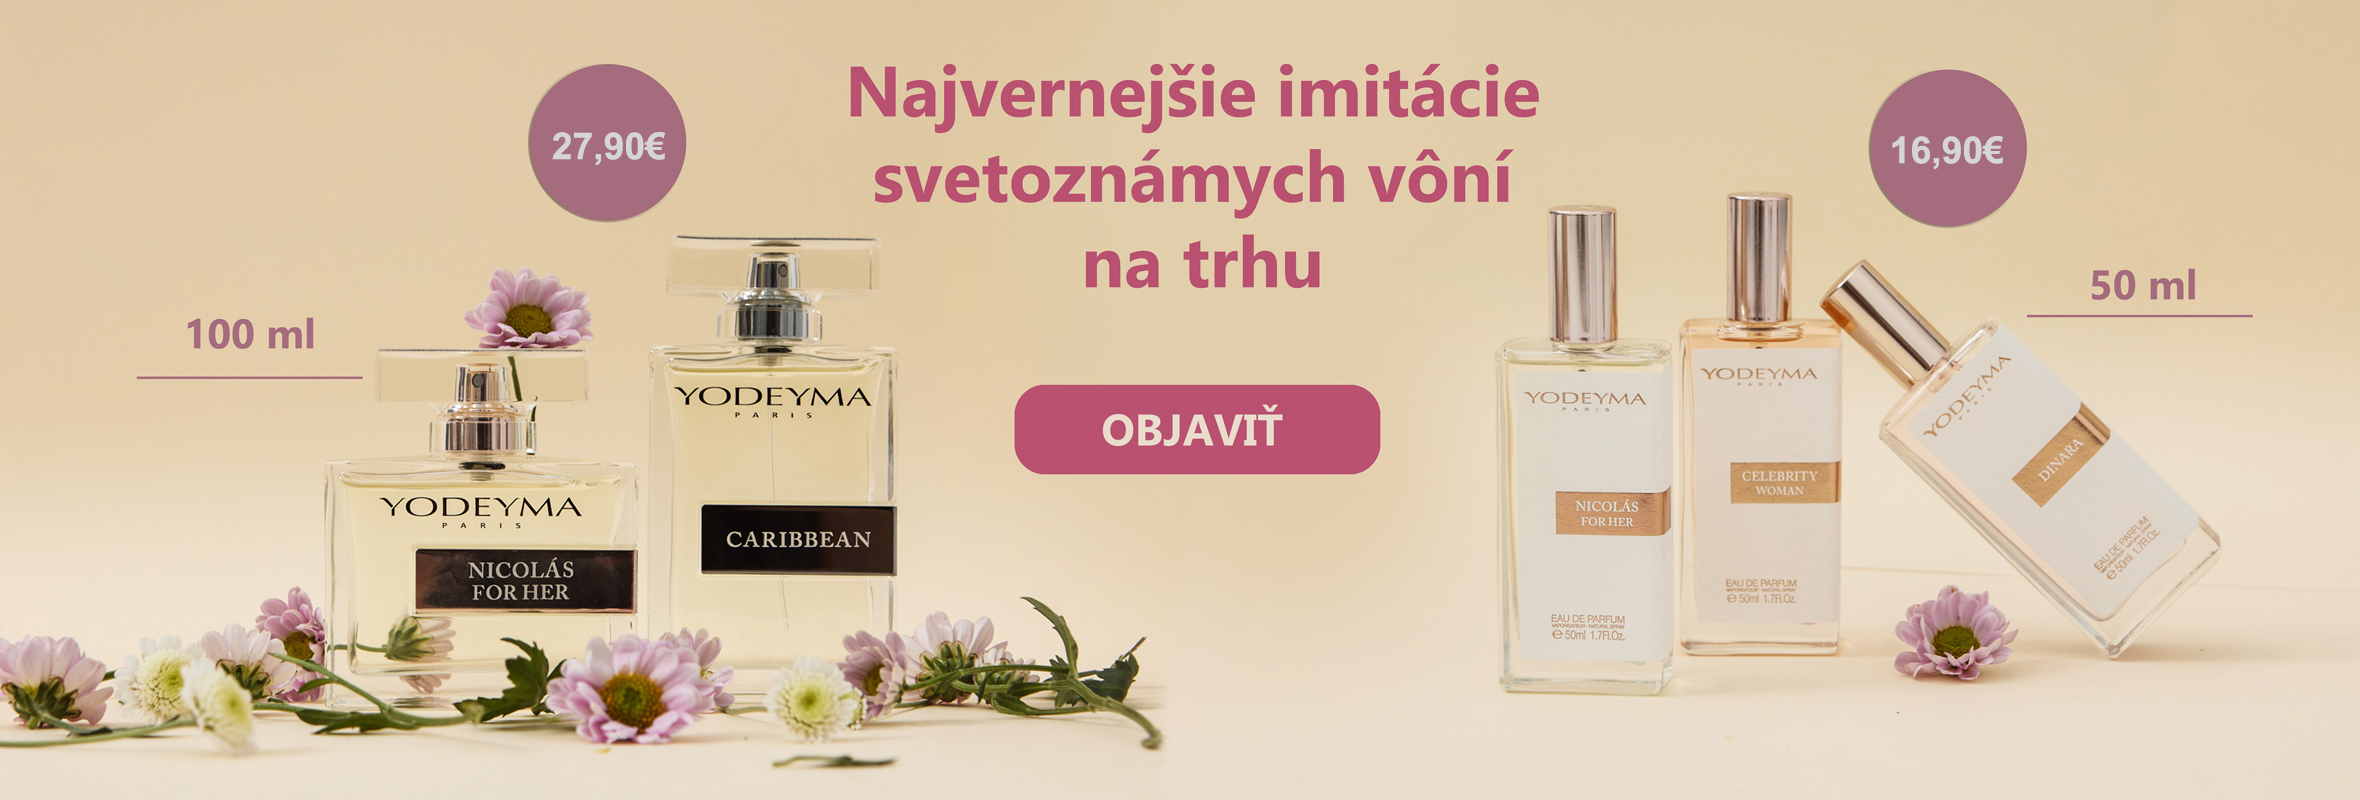 PARFÉMY YODEYMA - najvernejšie imitácie parfémov za skvelé ceny!